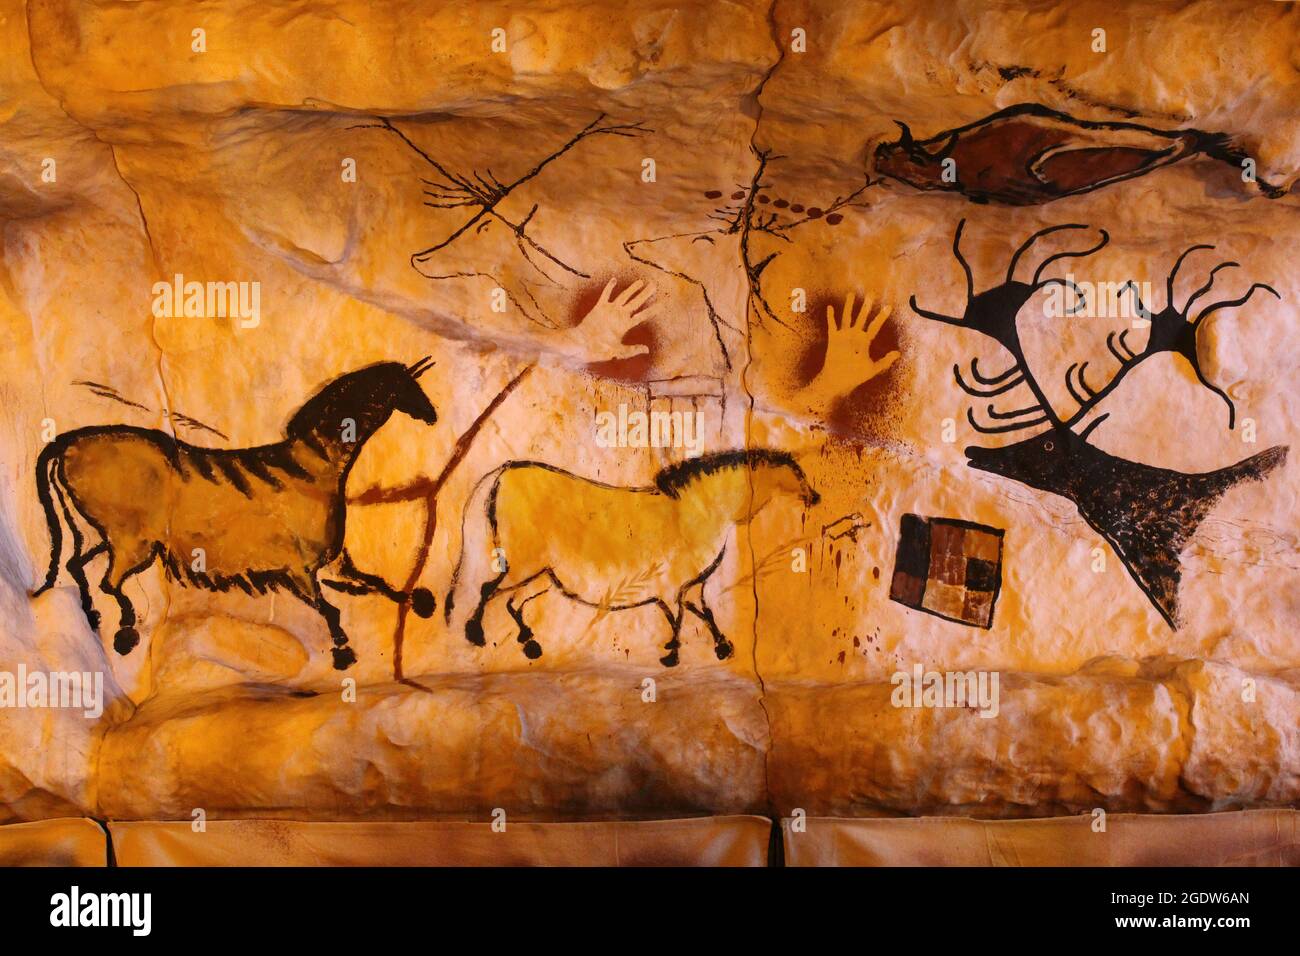 Ricostruzione moderna della Grotta Preistorica con opere d'arte raffiguranti animali e stampe a mano Foto Stock